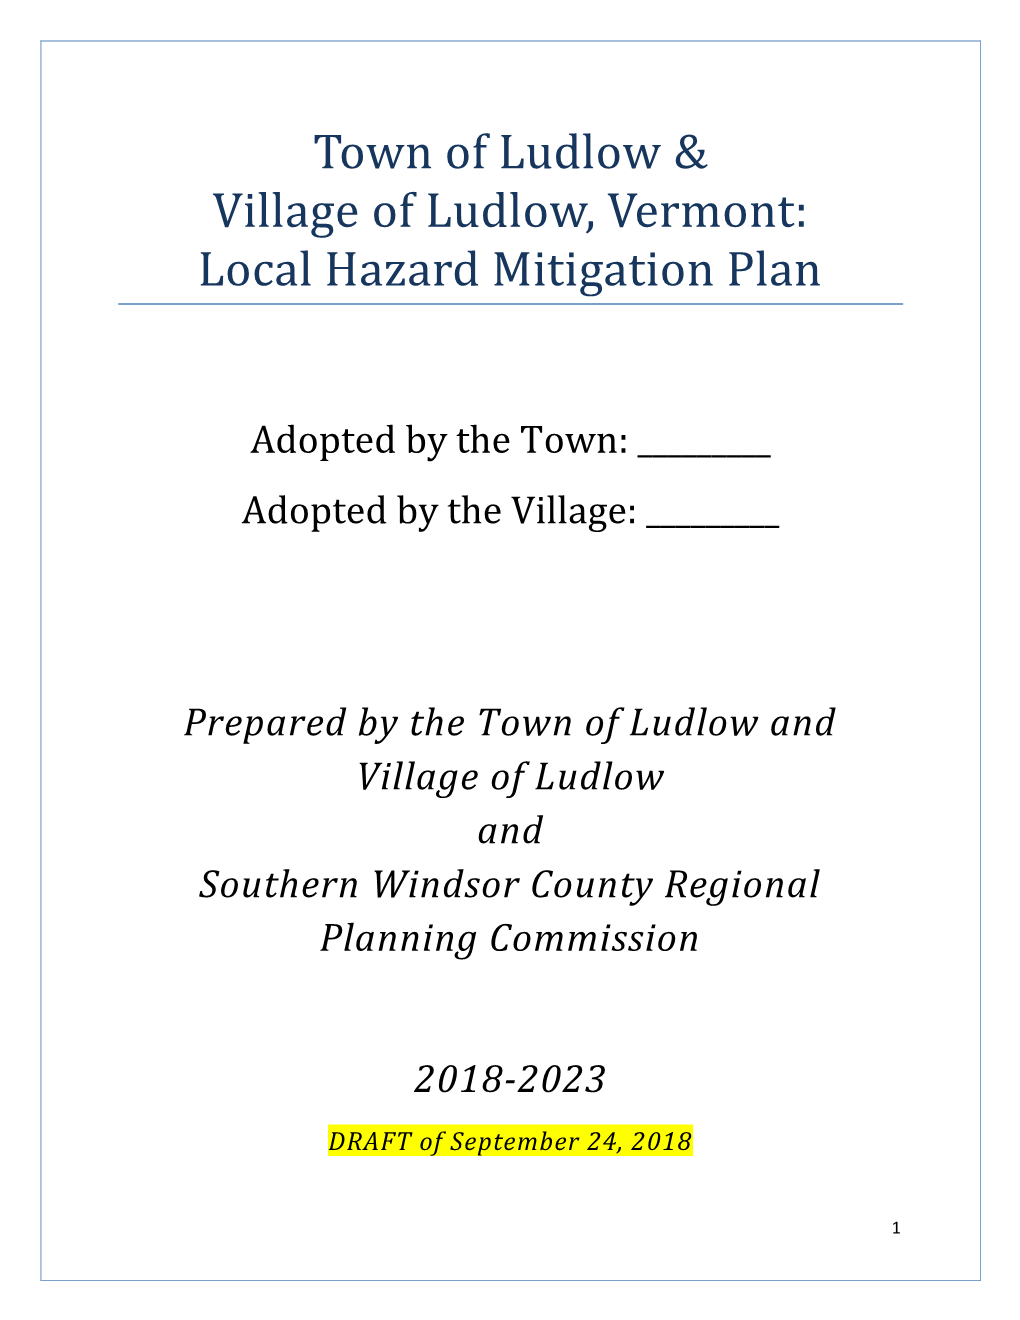 Town of Ludlow & Village of Ludlow, Vermont: Local Hazard Mitigation